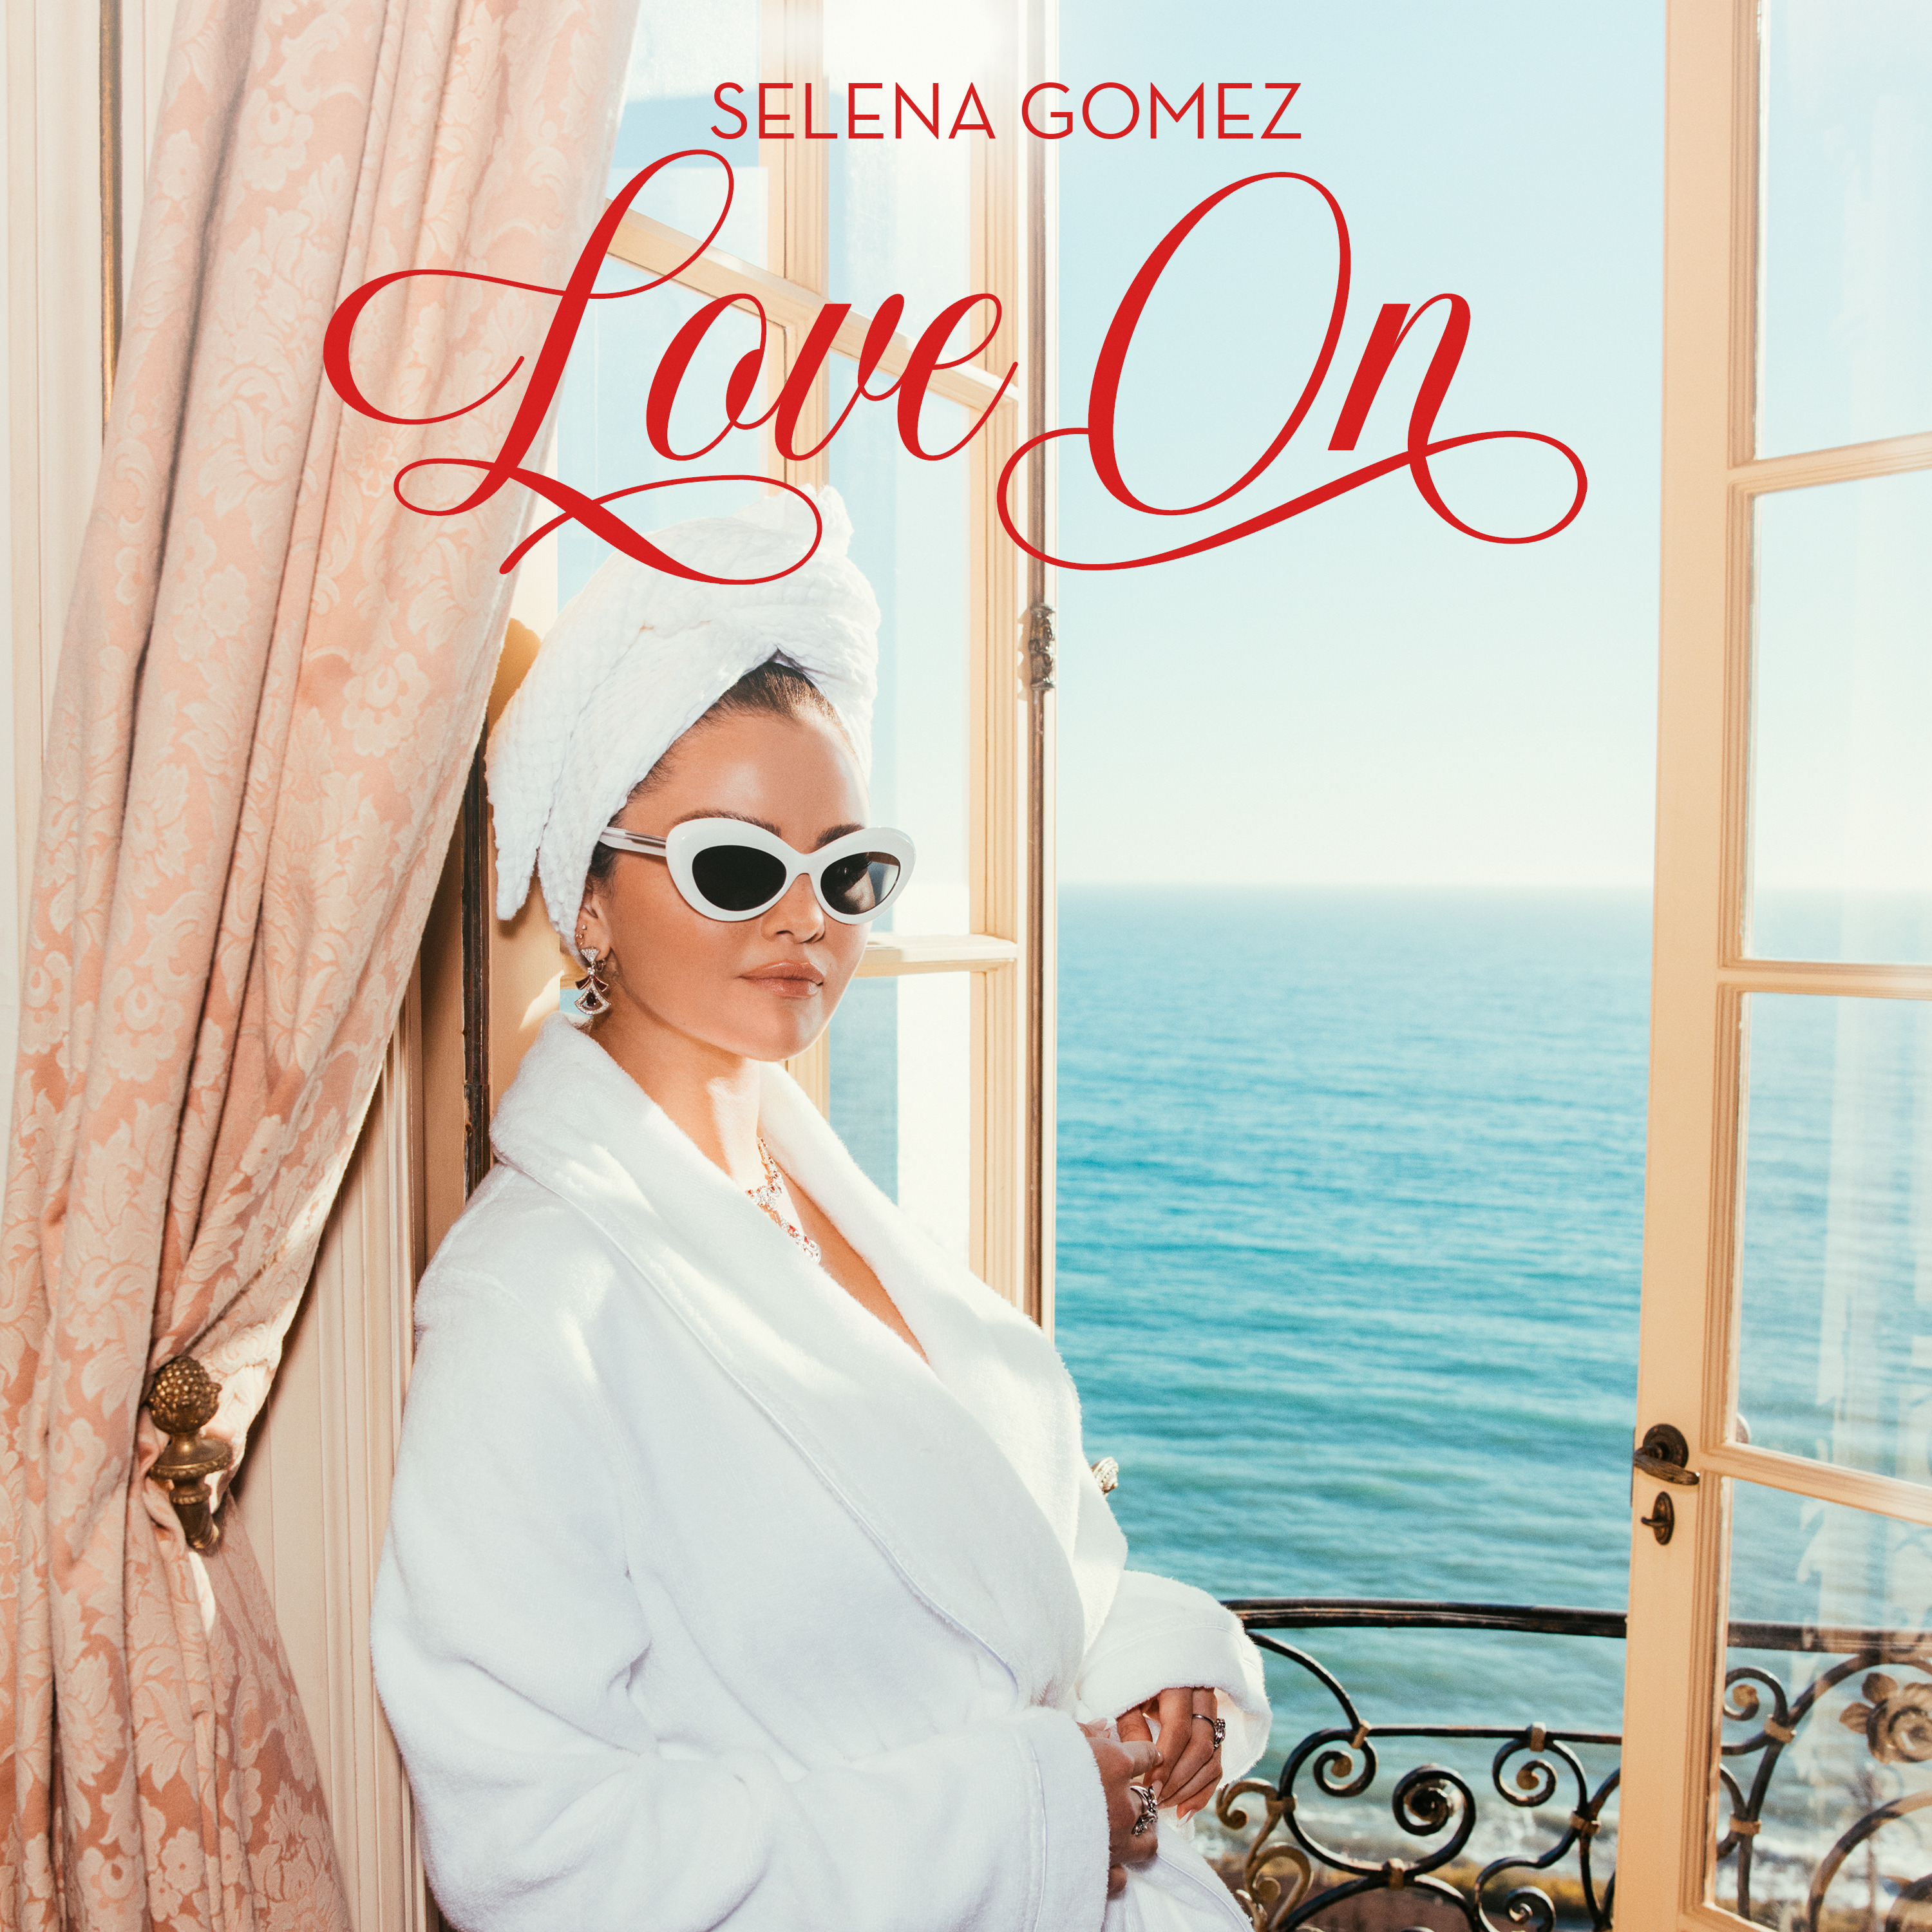 Selena Gomez Love On cover artwork